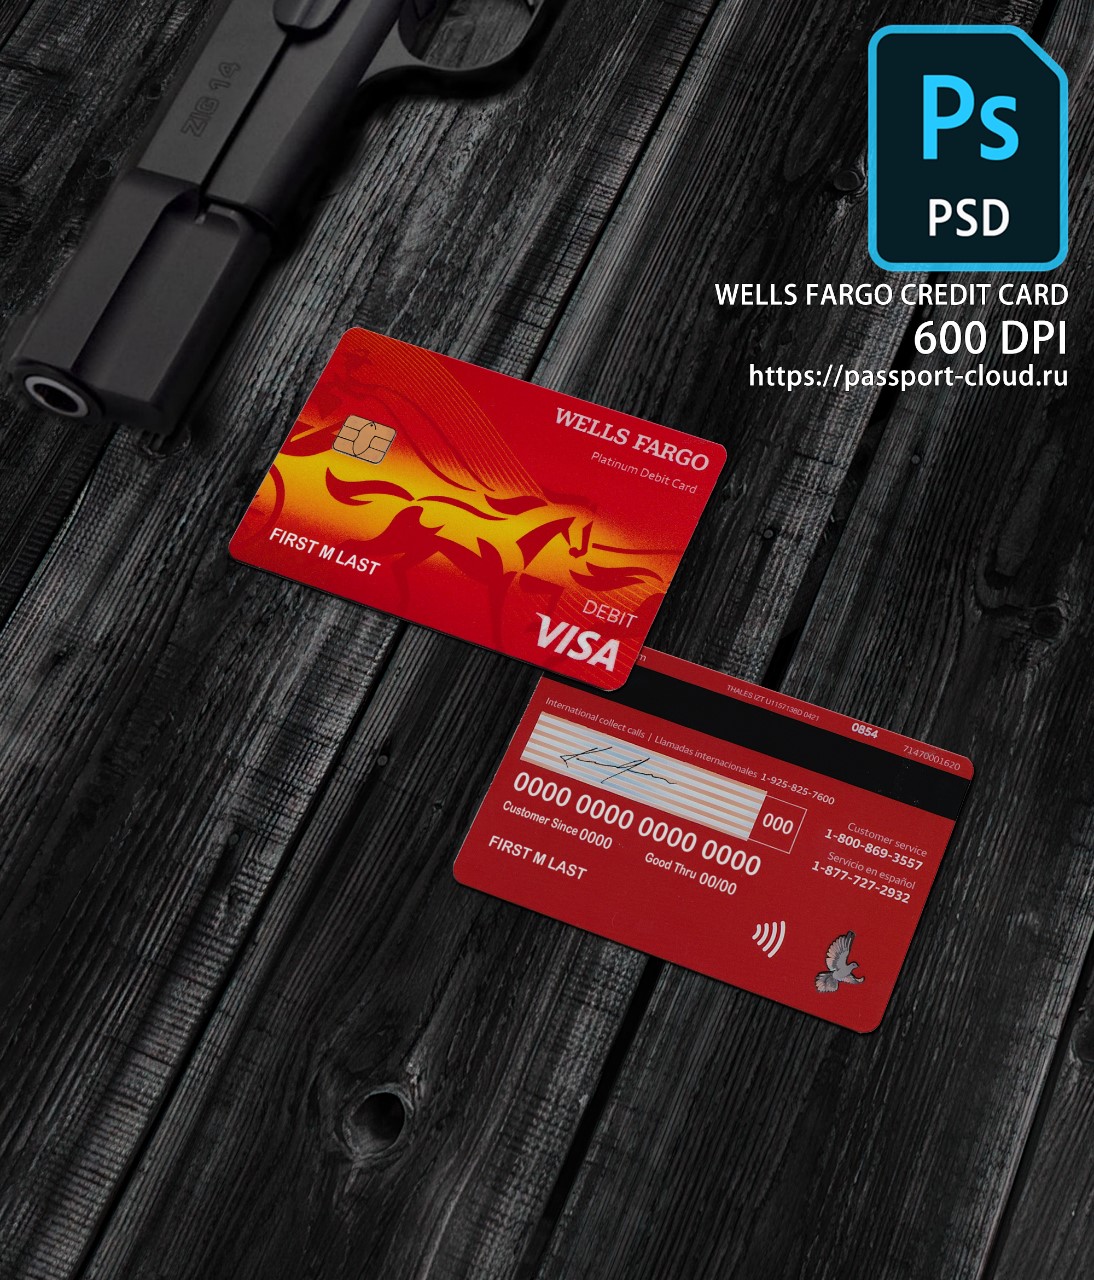 Wells Fargo Credit Card PSD1